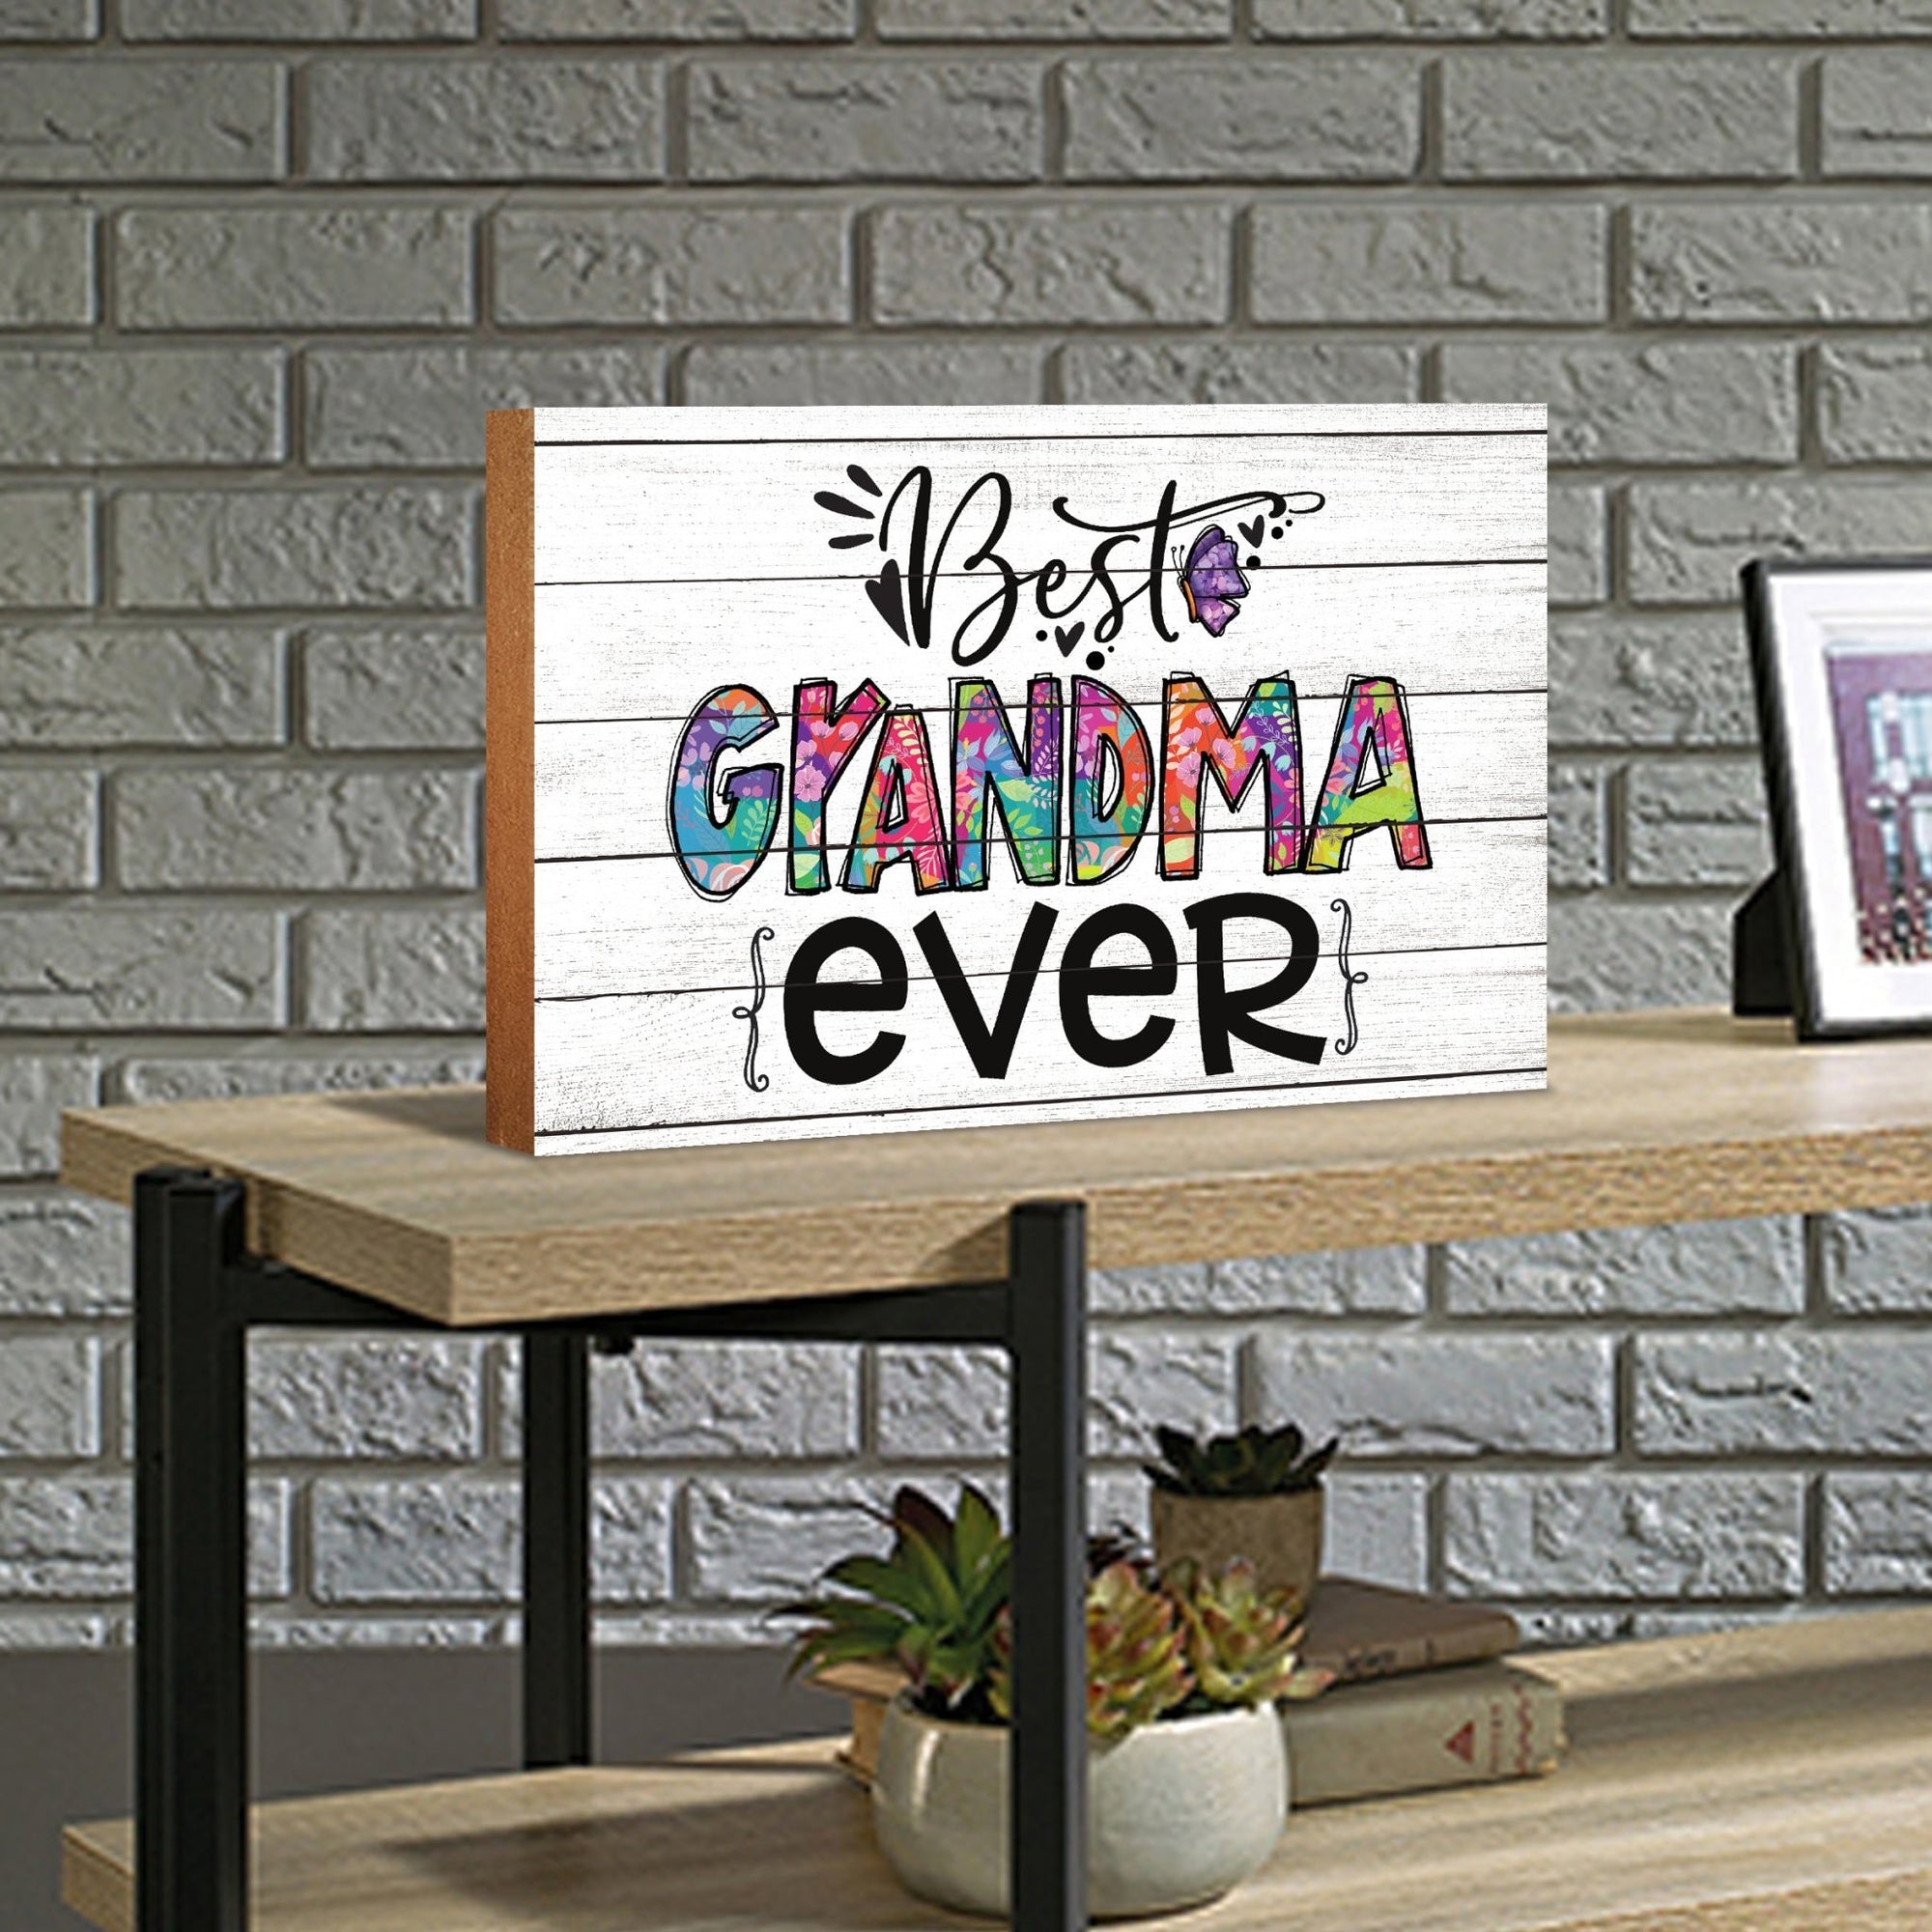 Modern-Inspired White Wooden Graffiti Art Shelf Sitter Gift Idea & Home Décor - Best Grandma Ever - LifeSong Milestones